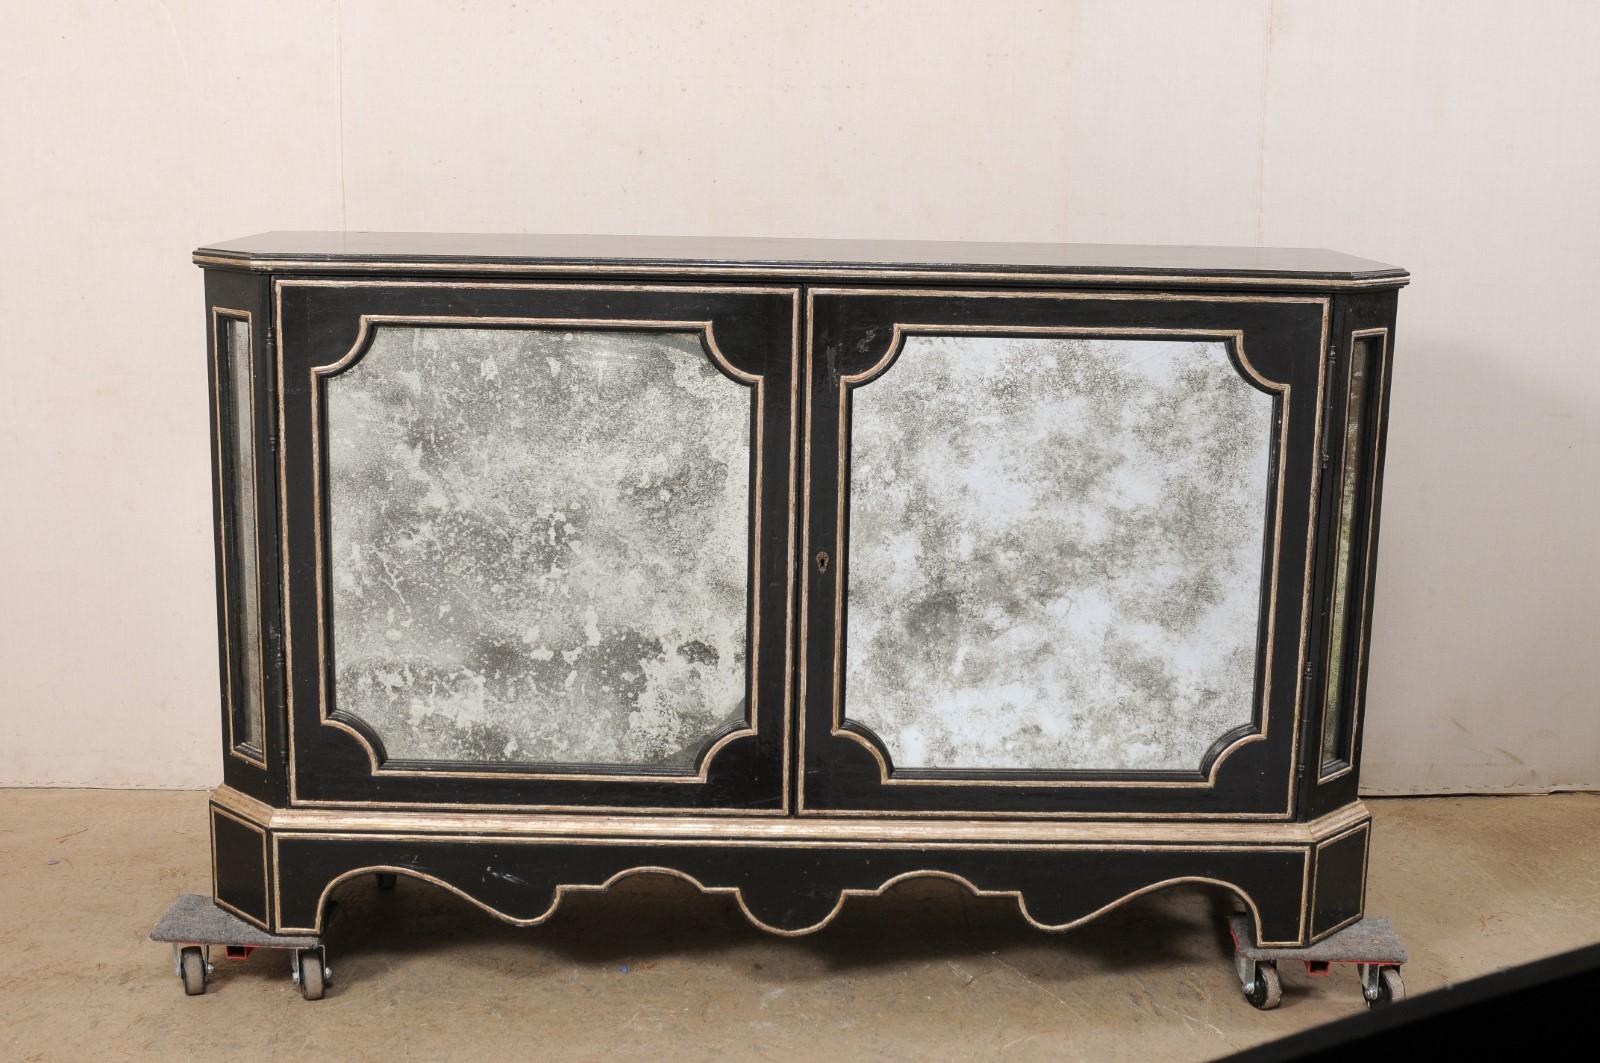 Une console vintage avec des panneaux en verre vieilli, par le créateur/fabricant américain Niermann Weeks. Ce buffet élégant est orné de panneaux en retrait en miroir vieilli sur l'extérieur, de montants latéraux inclinés, d'une jupe joliment